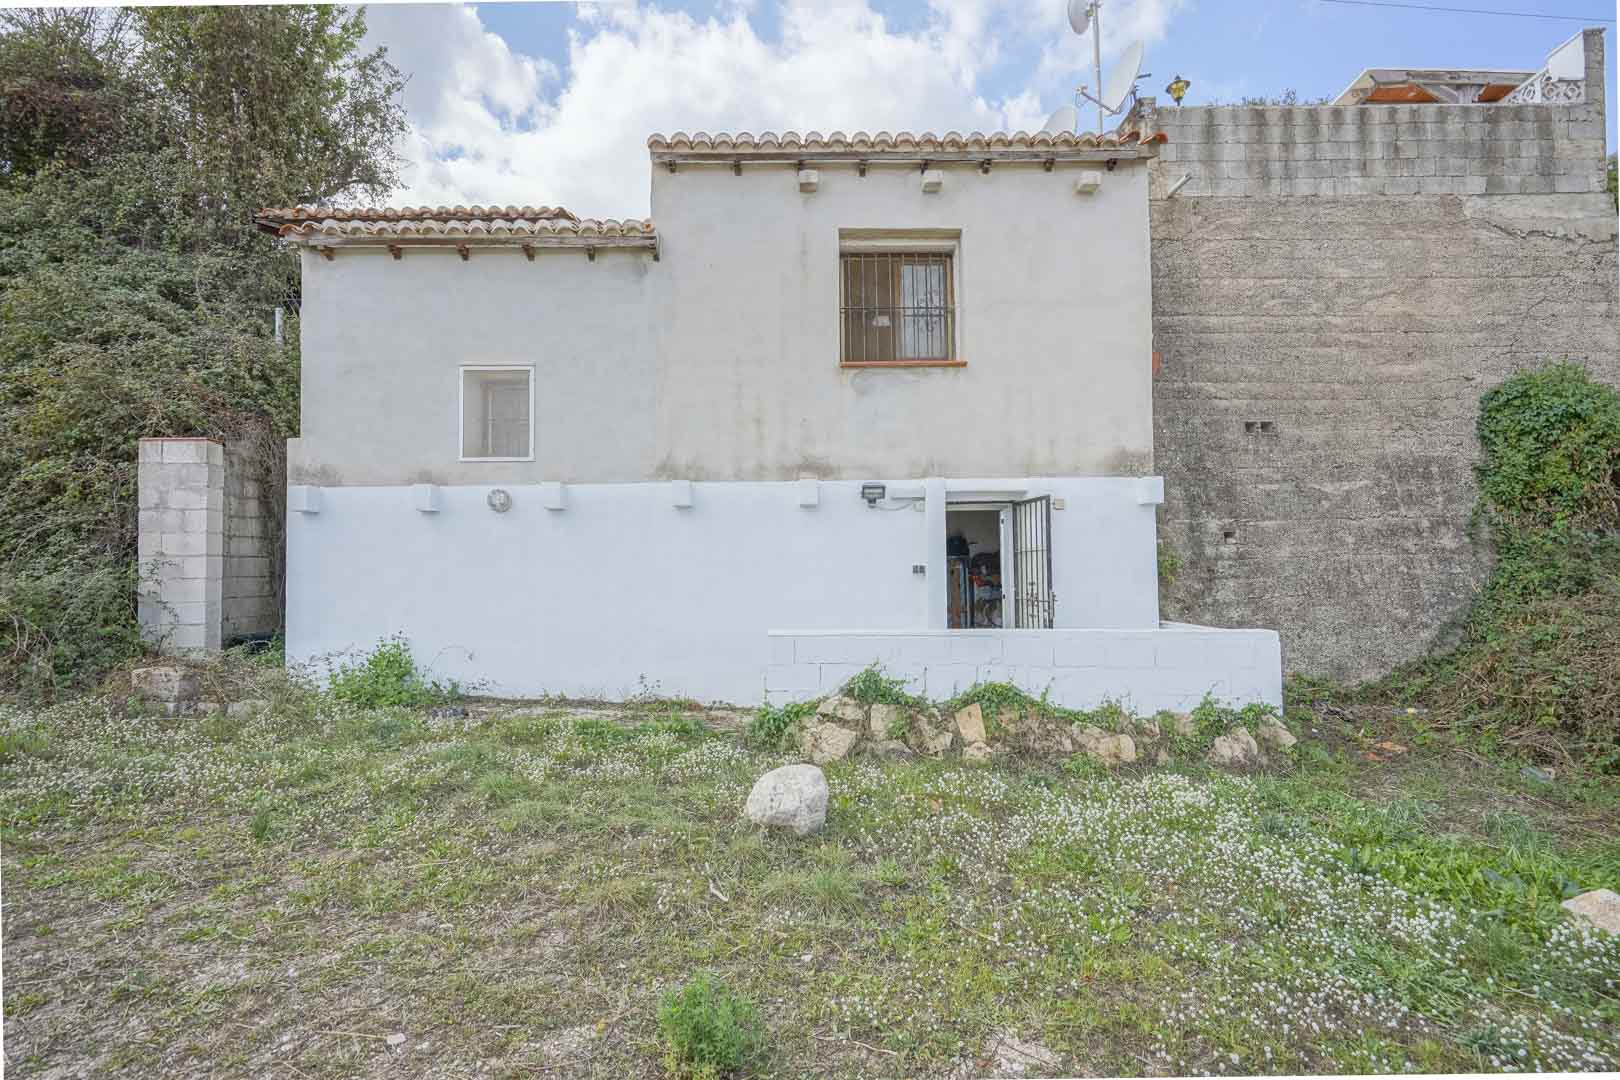 For Sale. Villa in Alcalali